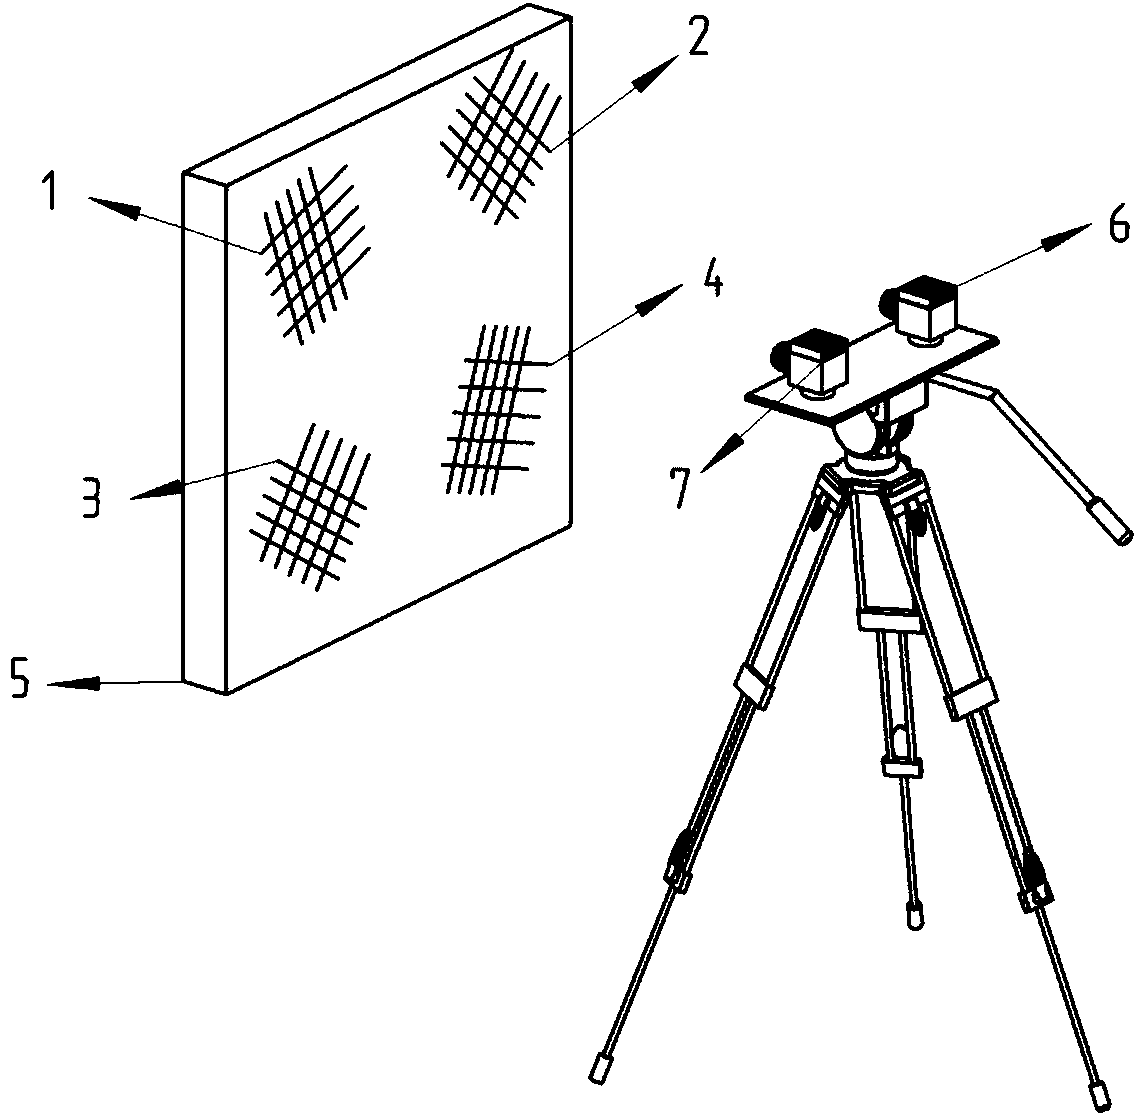 Binocular vision measurement system camera parameter online adjustment method